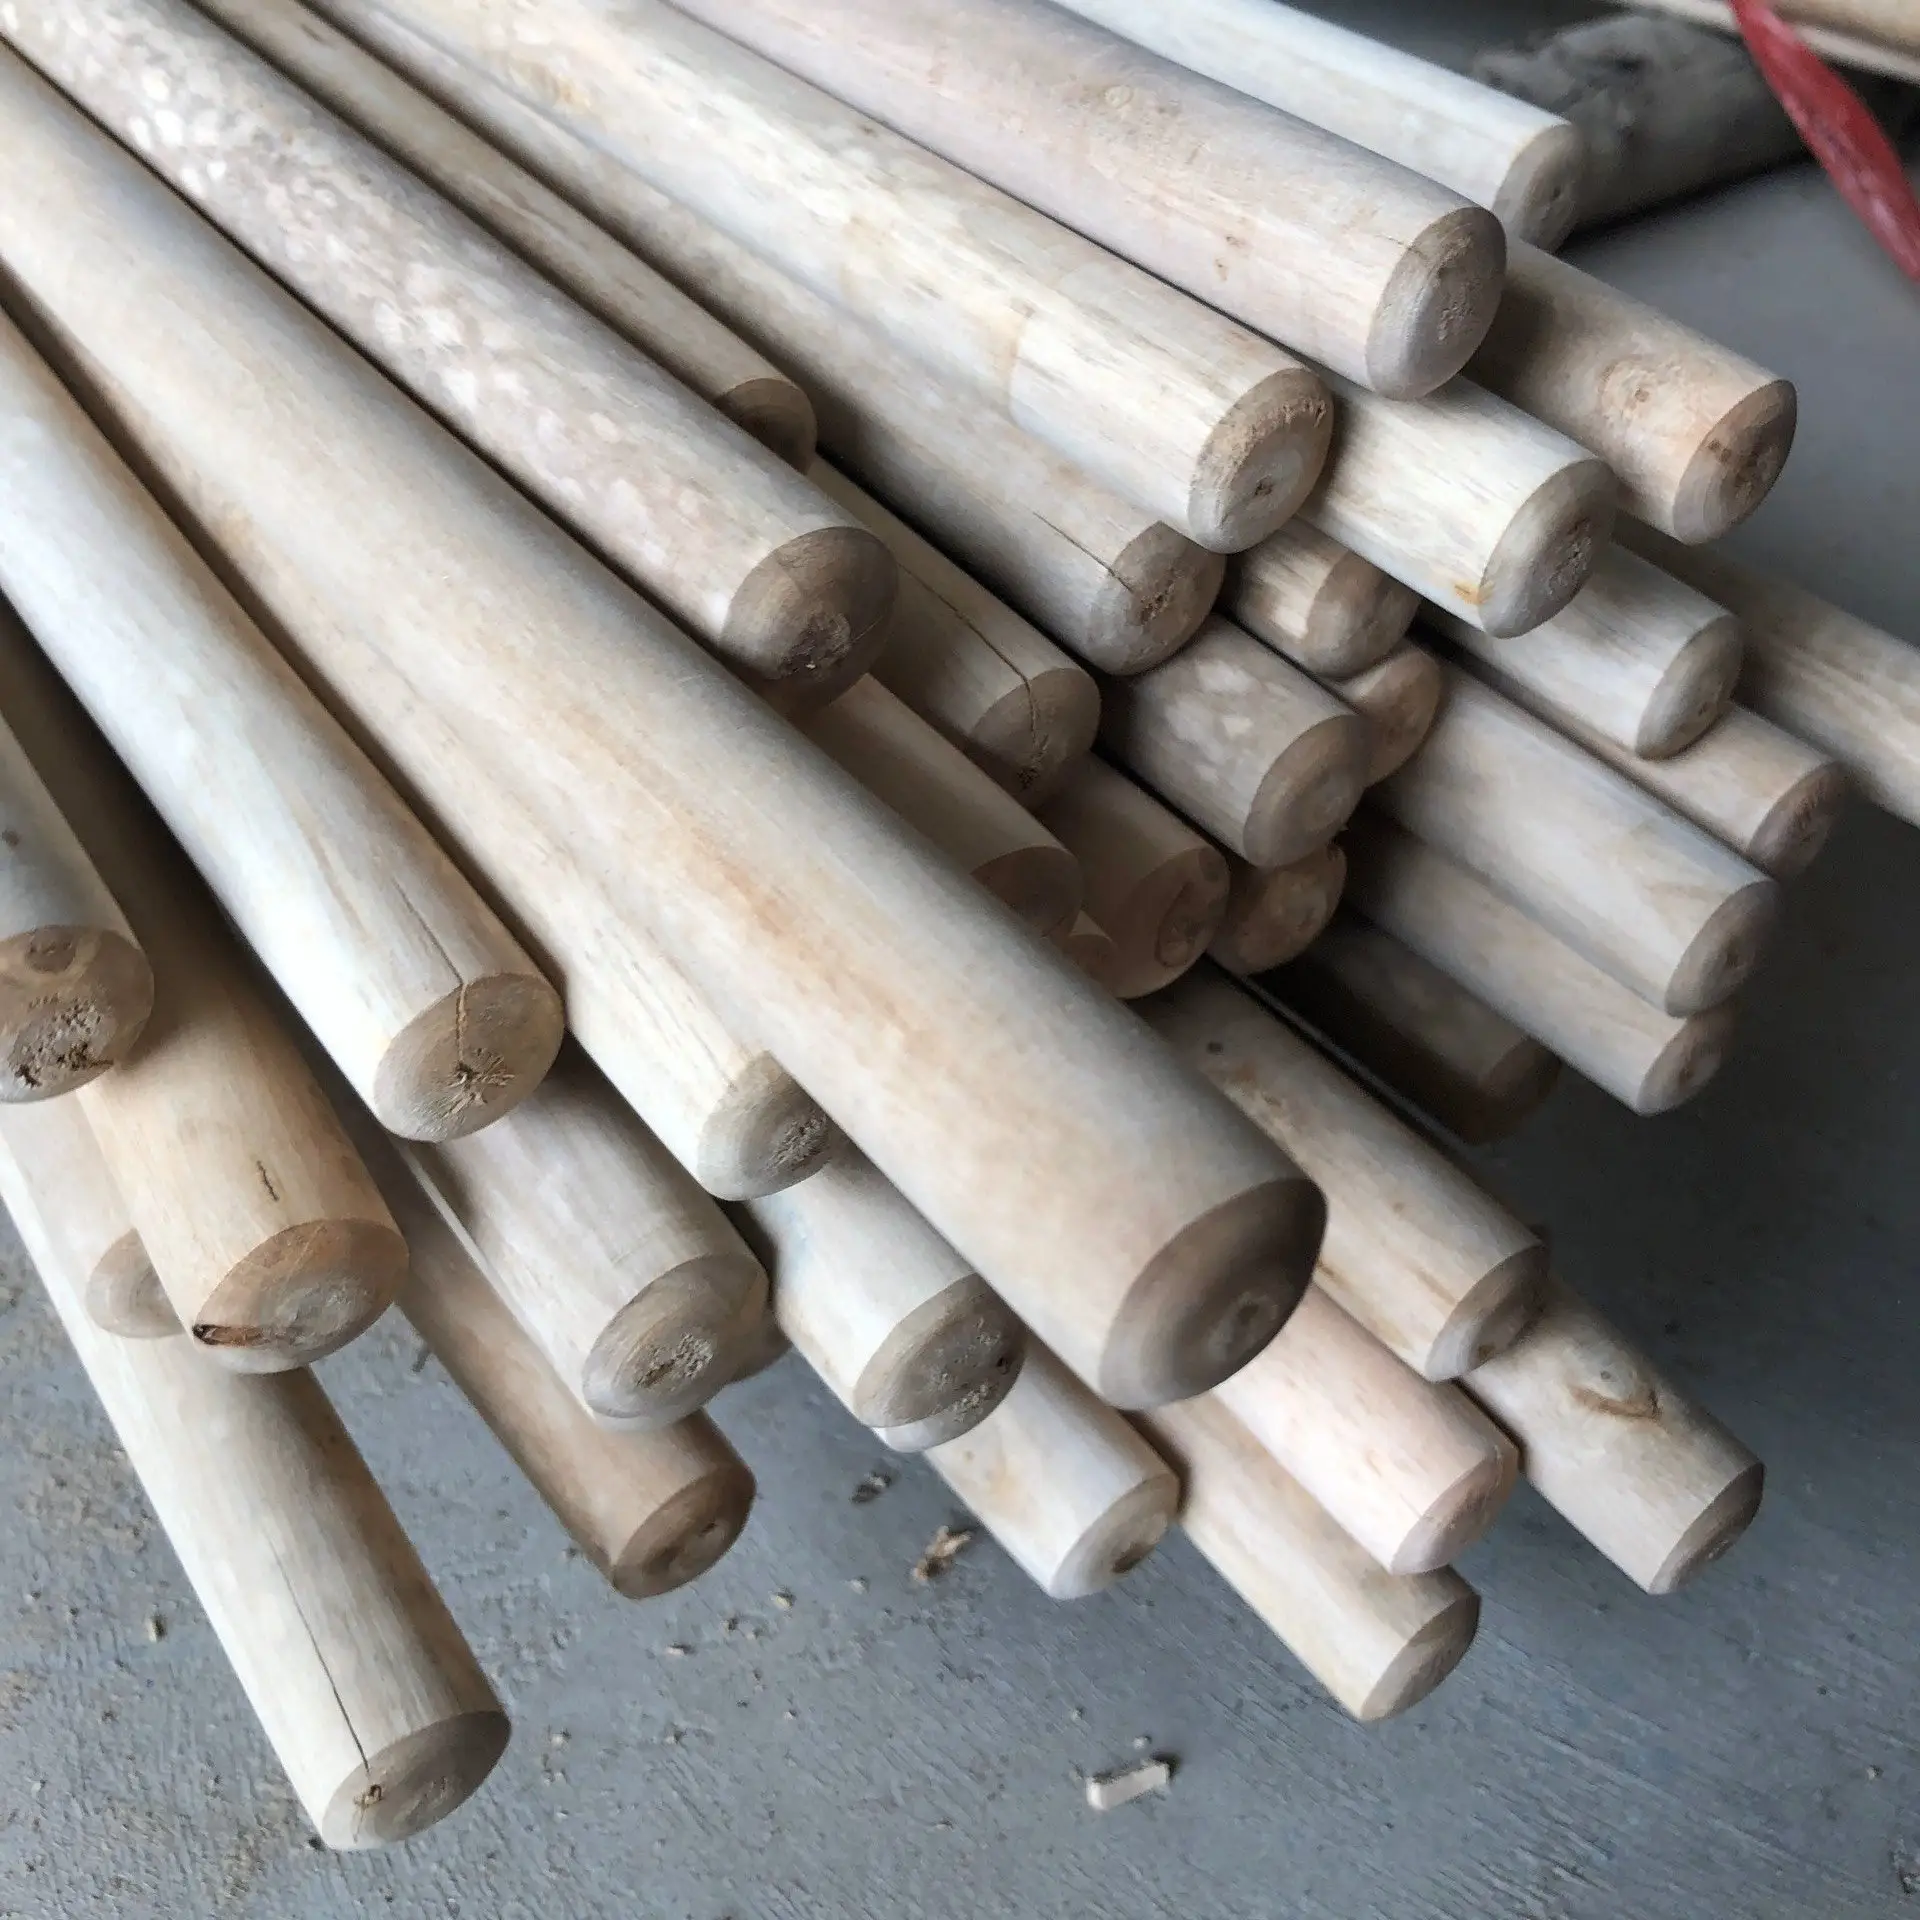 Manico di scopa in legno dal Viet nam, manico rivestito in PVC, materiale di eucalipto naturale 100% legno del Vietnam